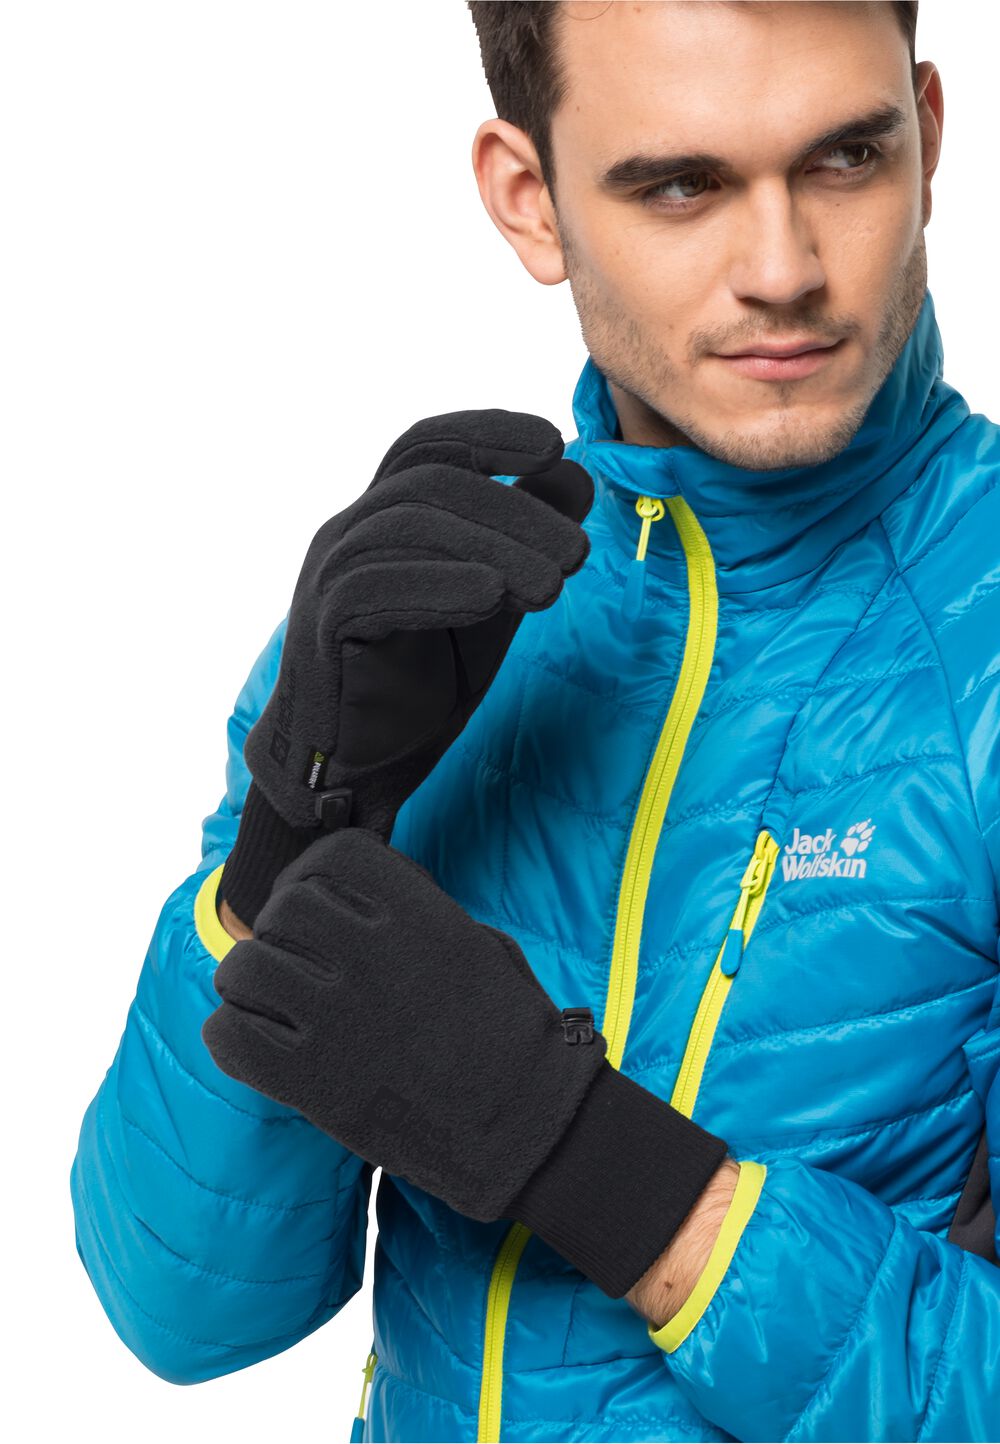 Jack Wolfskin Vertigo Glove Fleece handschoenen XL zwart black